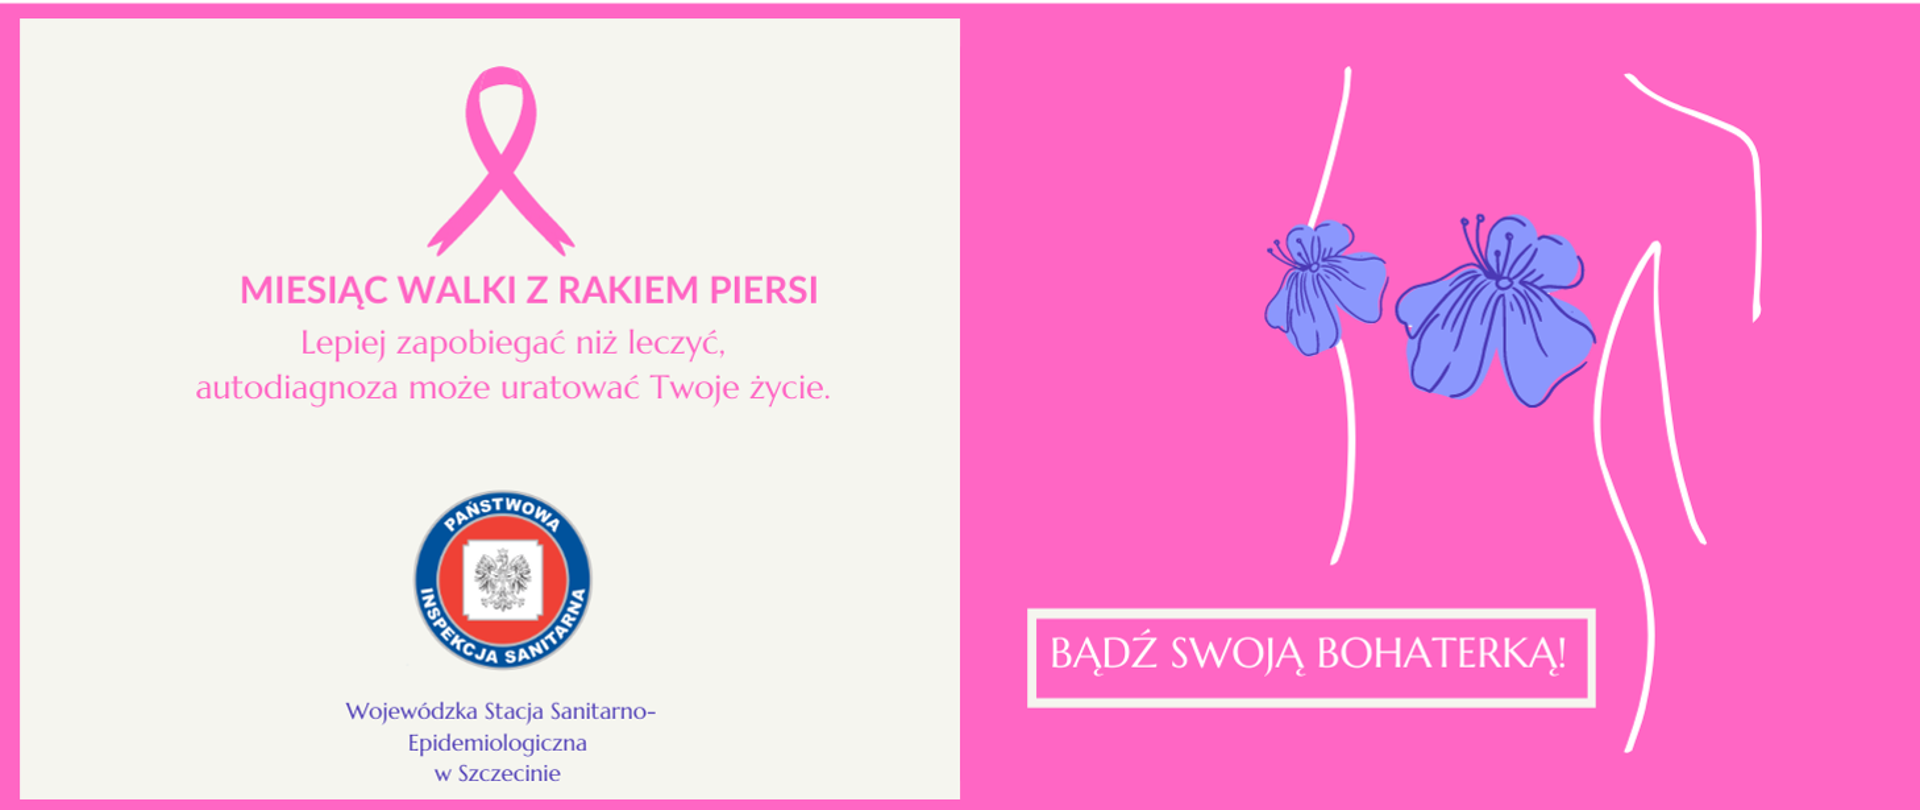 Biało różowe tło - napis Miesiąc walki z rakiem piersi - Bądź swoją bohaterką